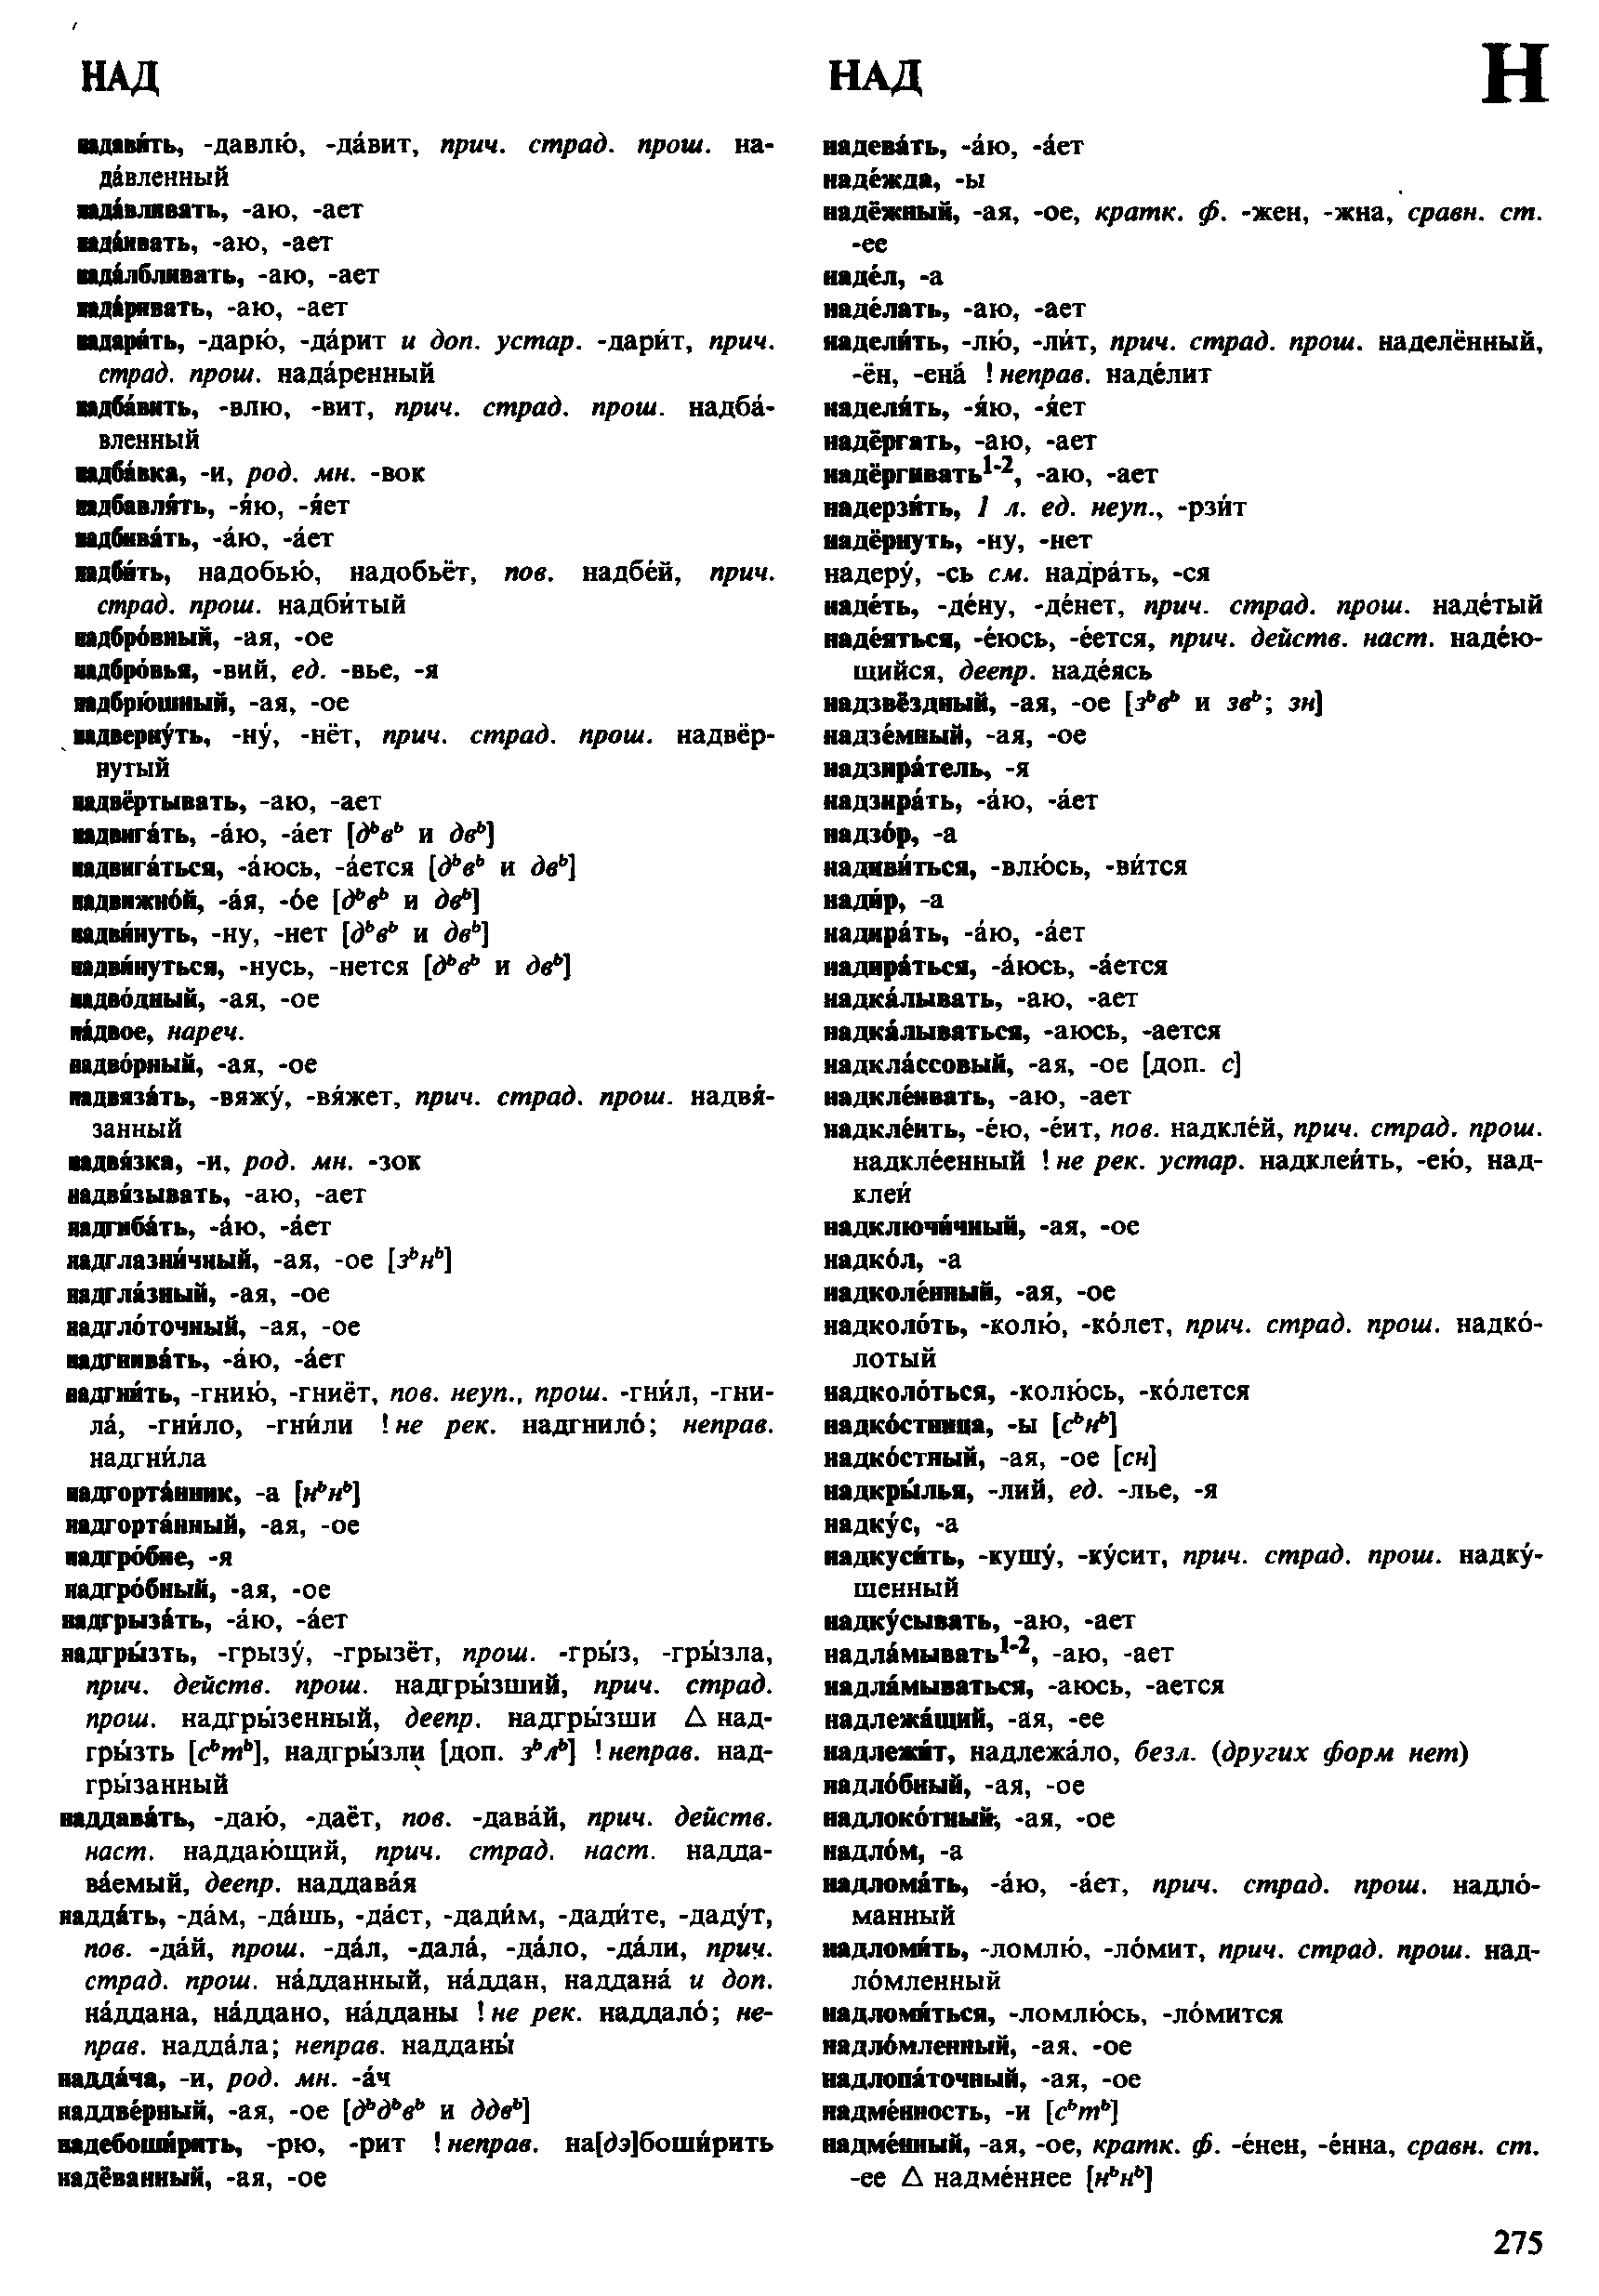 Фотокопия pdf / скан страницы 275 орфоэпического словаря под редакцией Аванесова (4 издание, 1988 год)